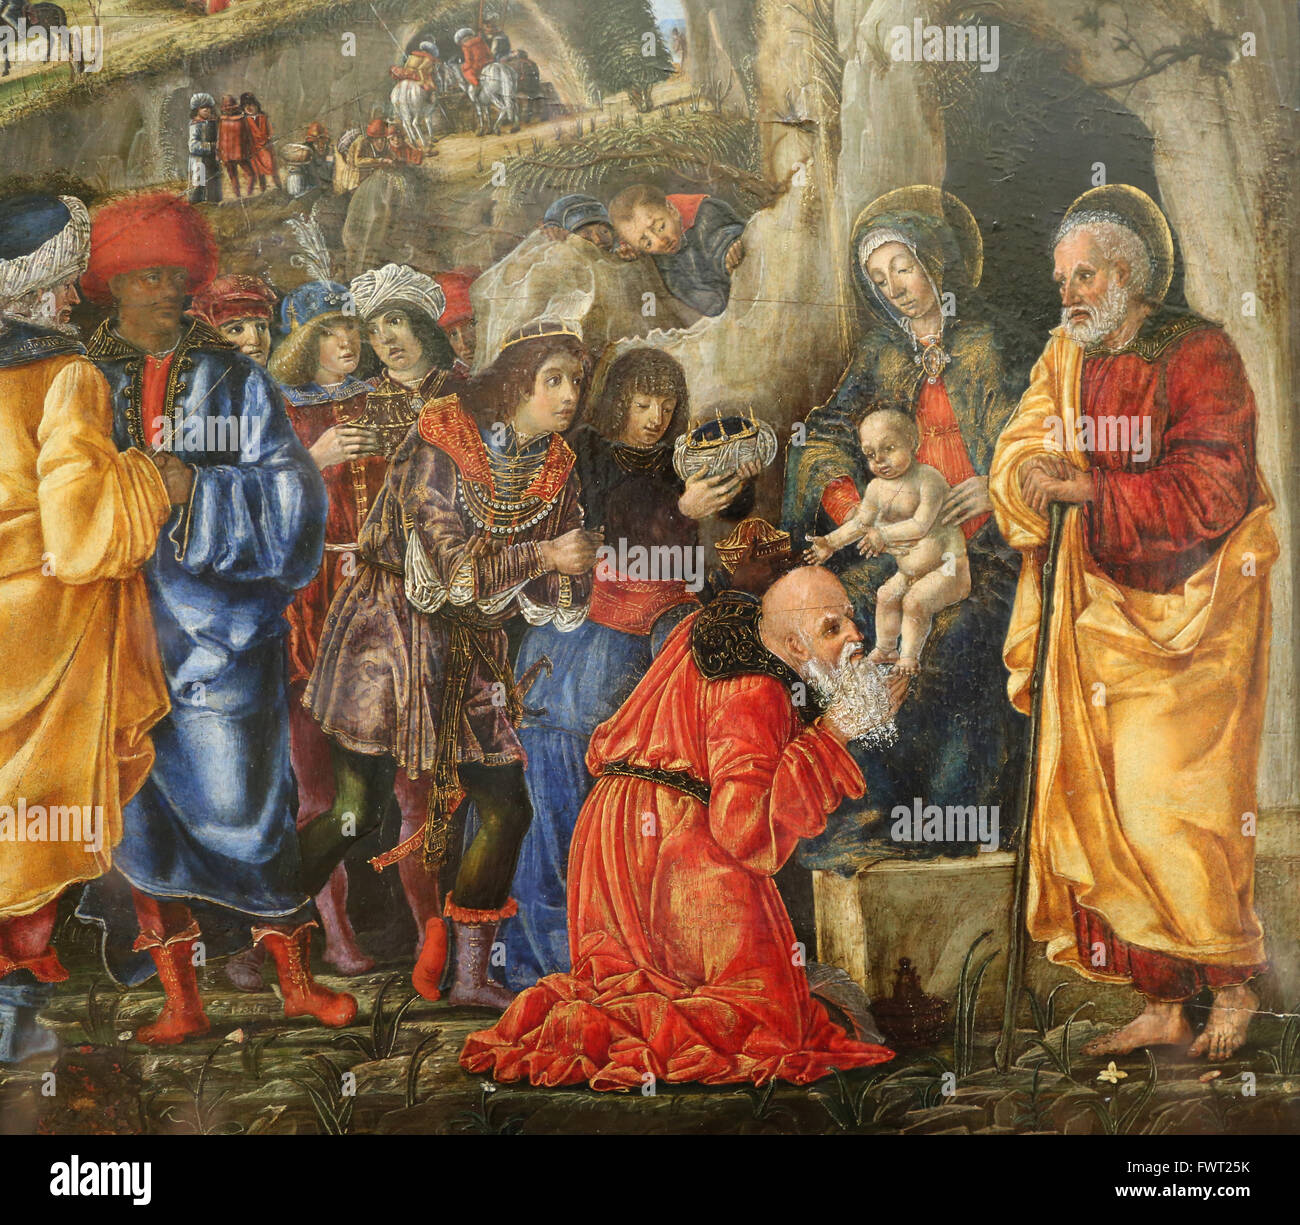 Bernardo Parentino (1450-1500). Pintor italiano. Renacimiento. La adoración de los Magos, 1475. El Museo del Louvre. París. Francia. Foto de stock